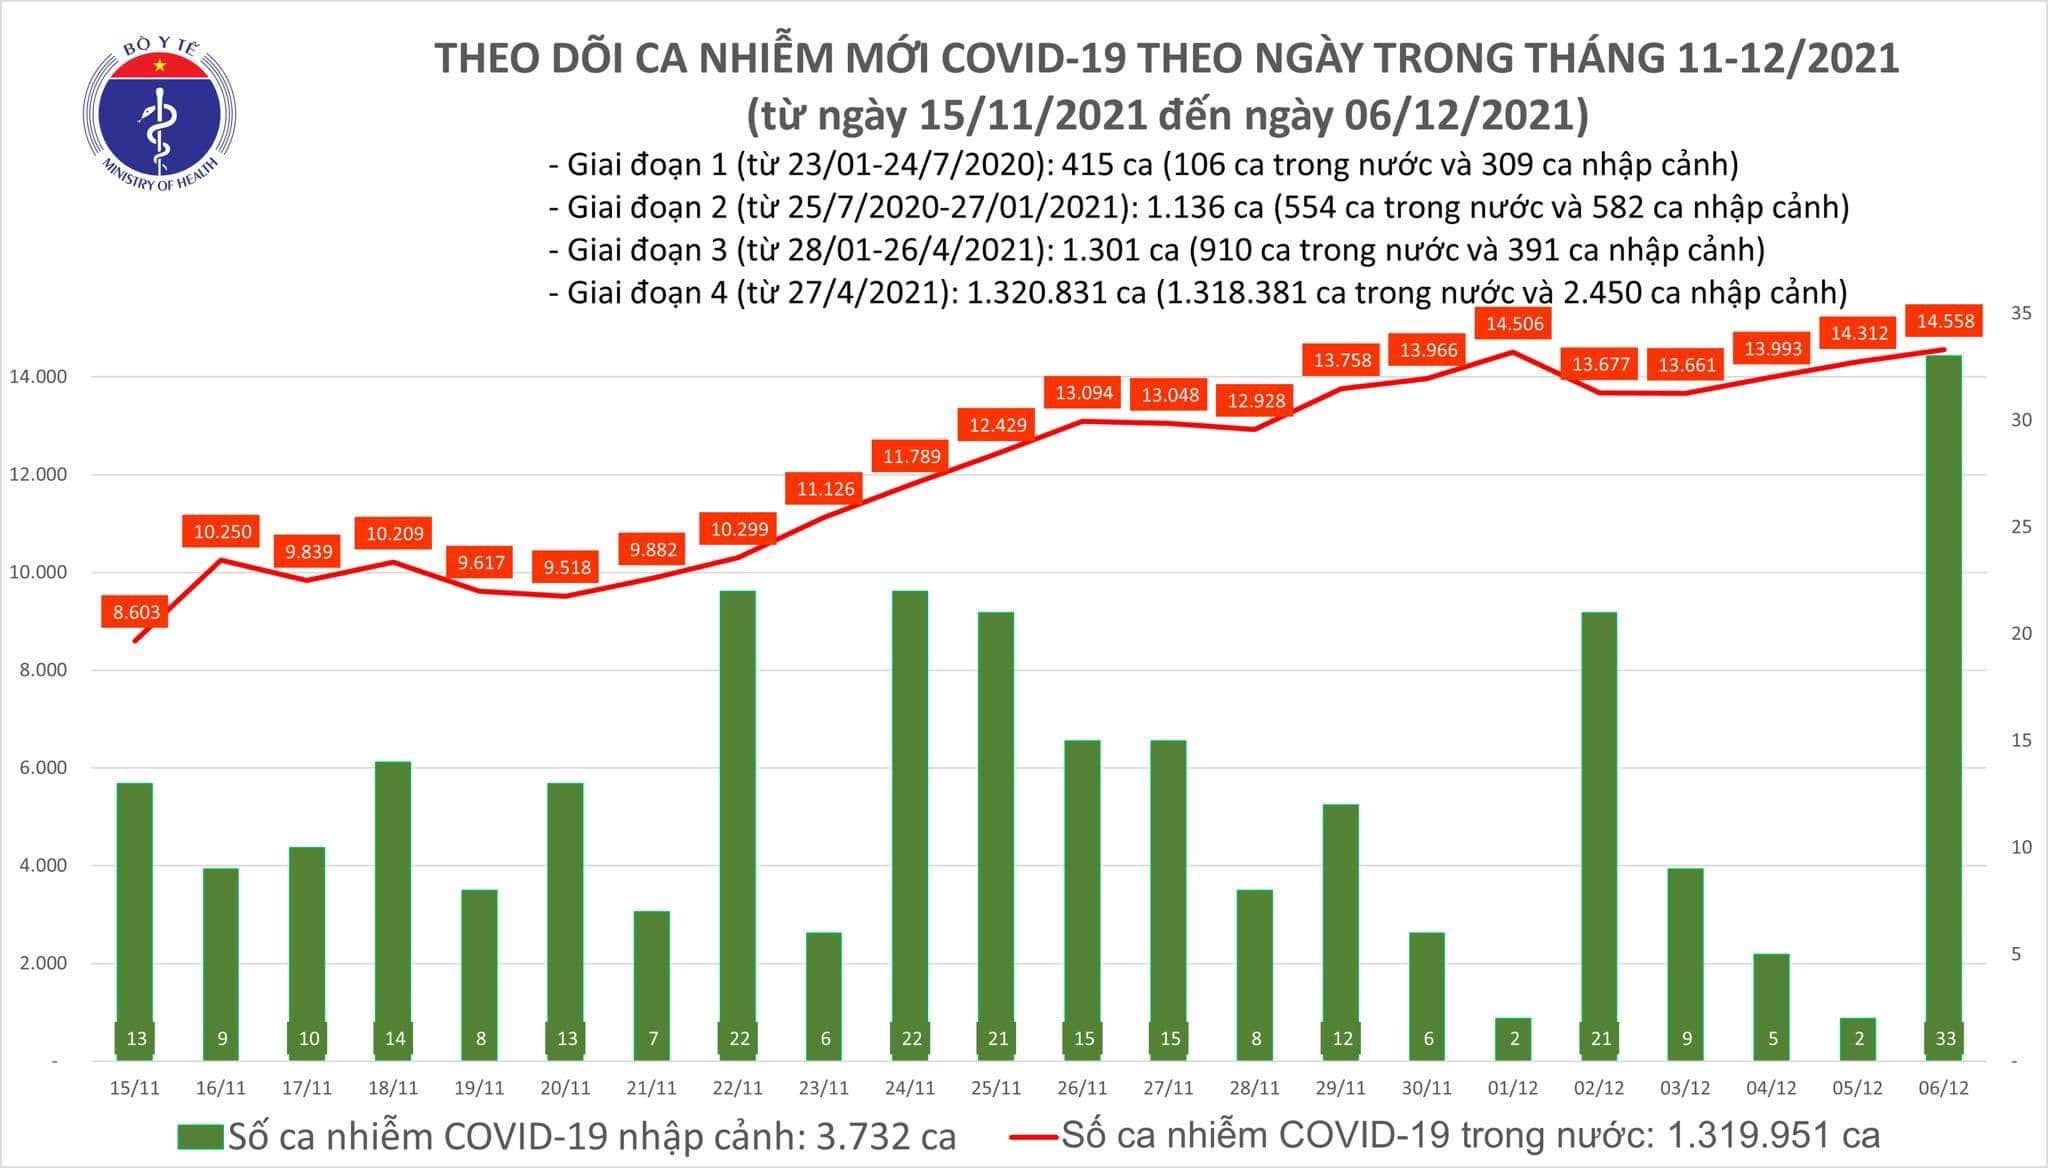 Việt Nam ghi nhận 14.591 ca mắc mới COVID-19 trong ngày 6/12